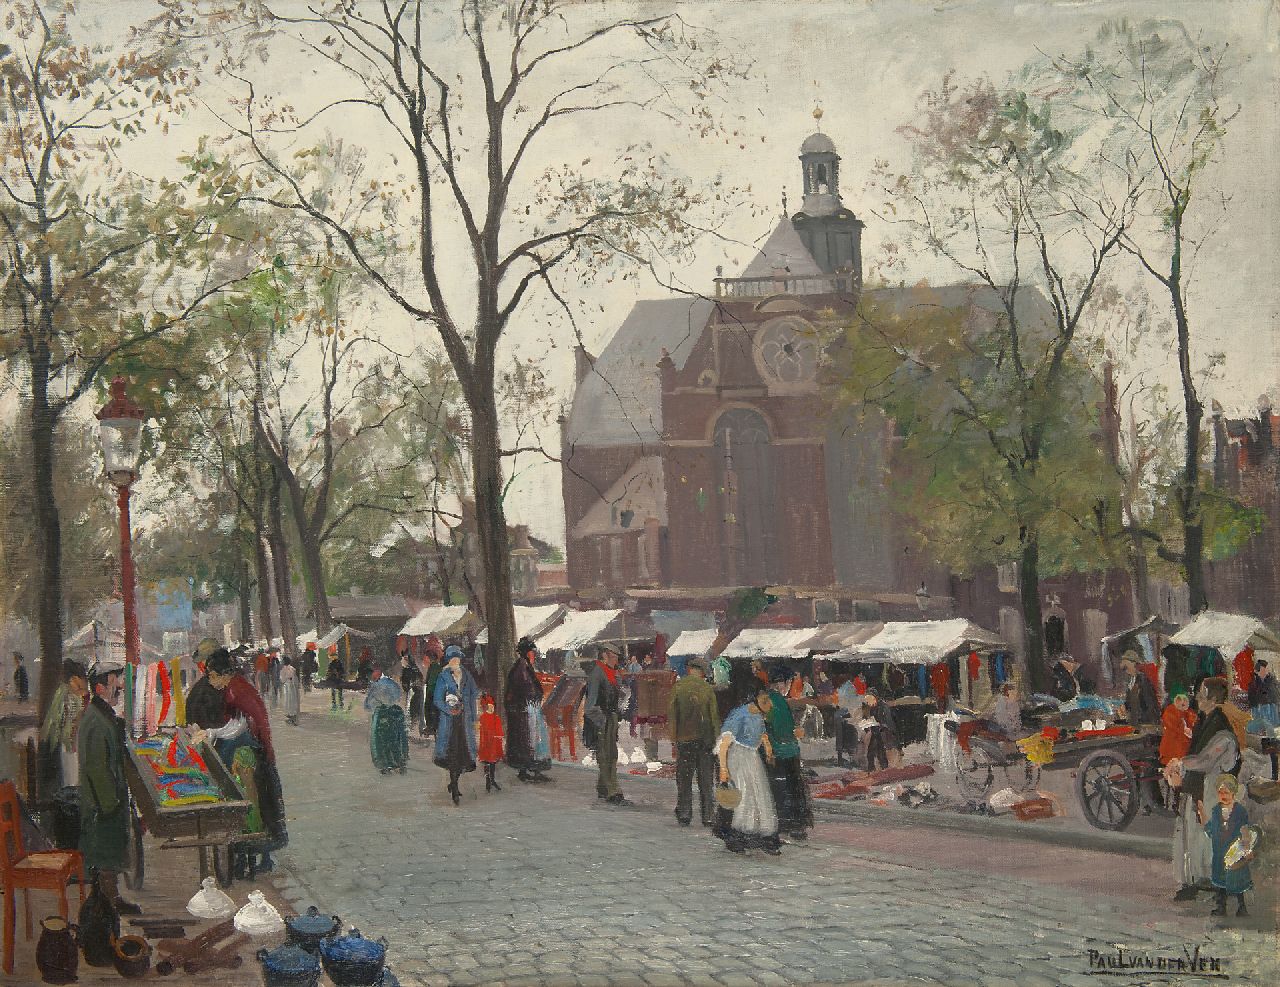 Ven P.J. van der | 'Paul' Jan van der Ven | Schilderijen te koop aangeboden | De Noordermarkt, Amsterdam, olieverf op doek 84,4 x 109,8 cm, gesigneerd rechtsonder en op spieraam